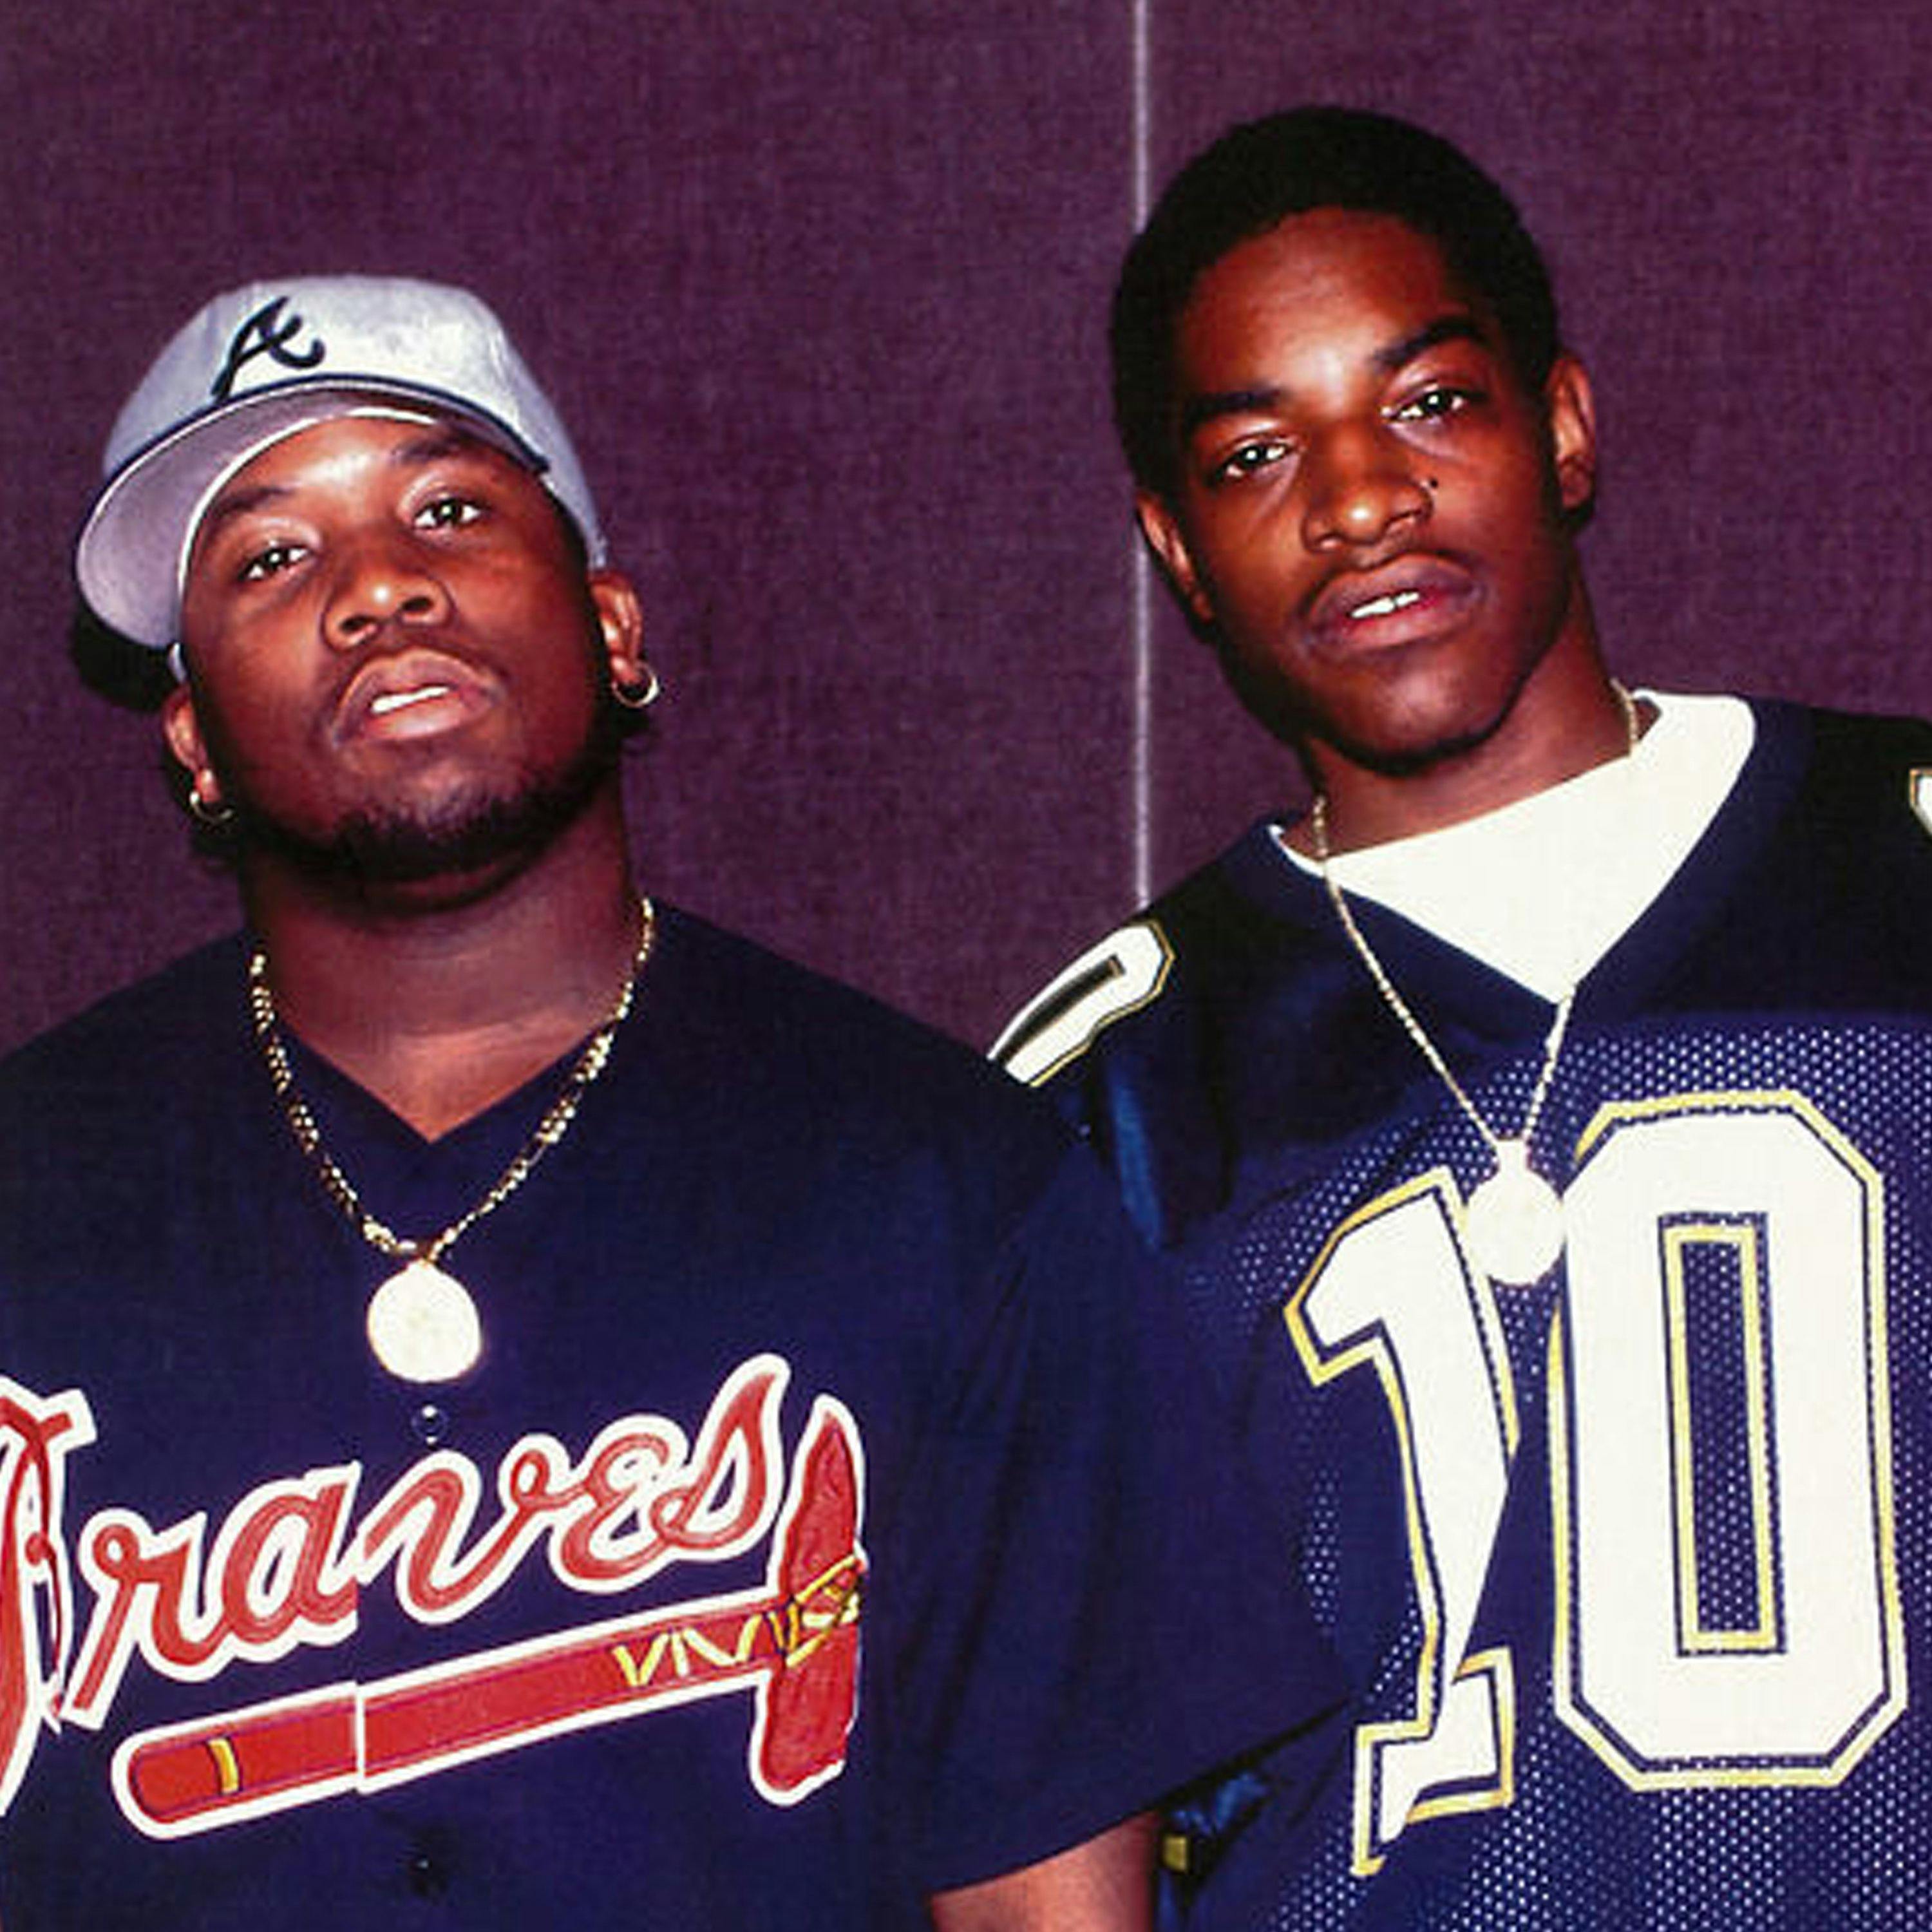 rappers wearing baseball jerseys